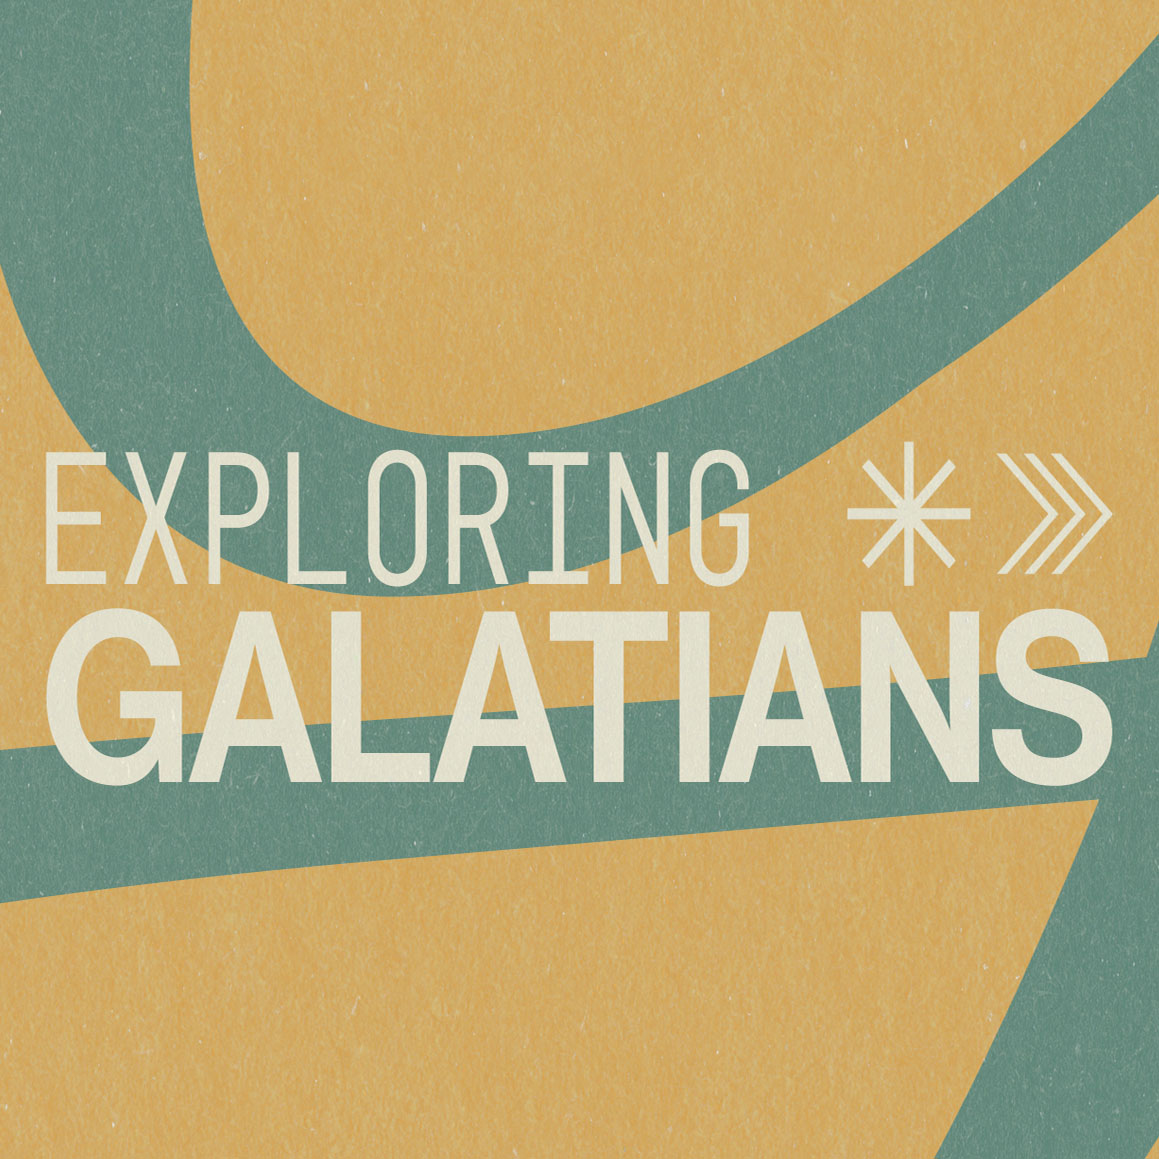 Galatians 2:1-14